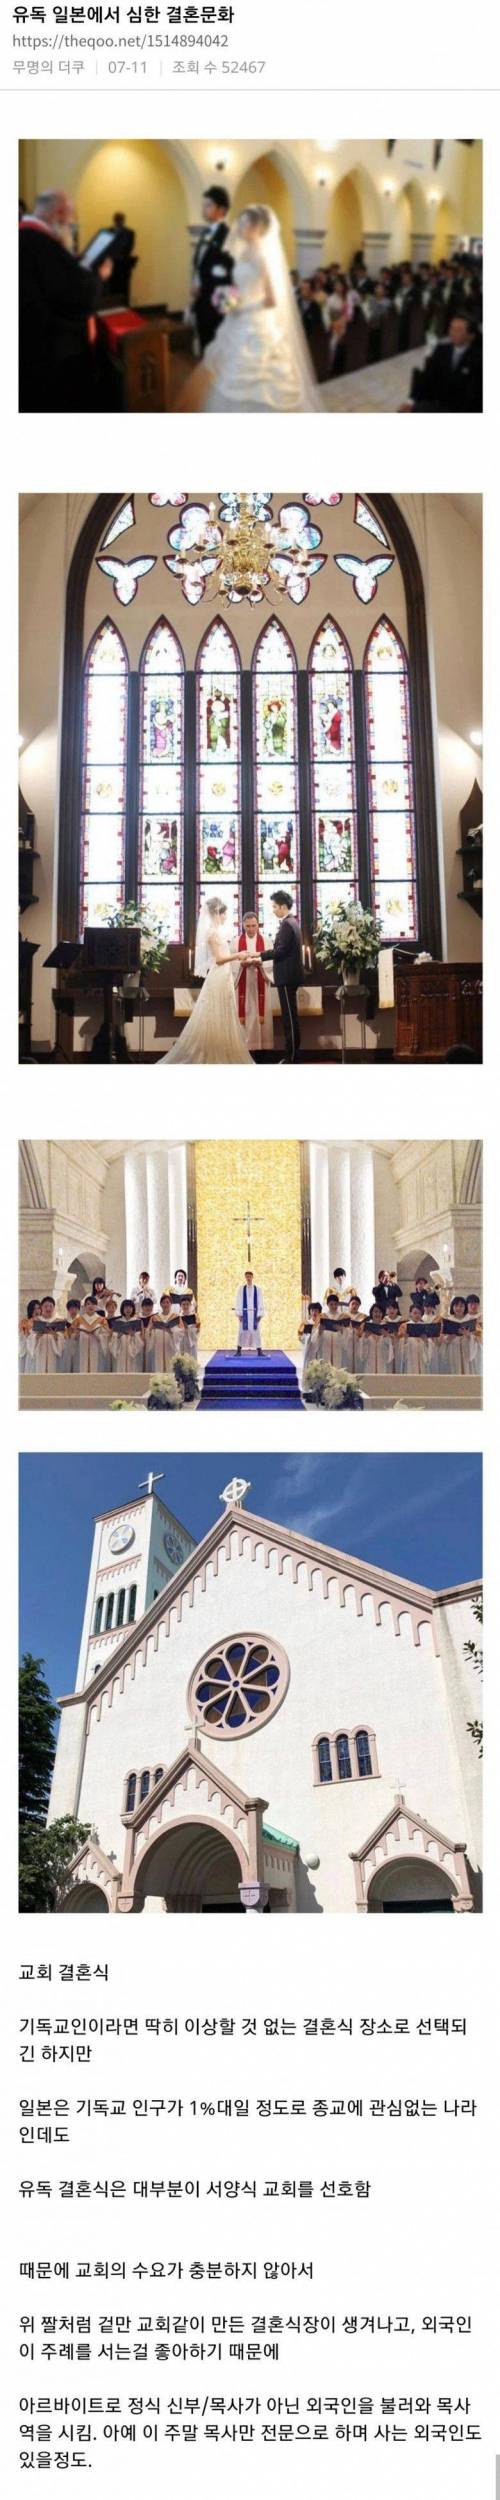 유독 일본에서 심한 결혼문화.jpg